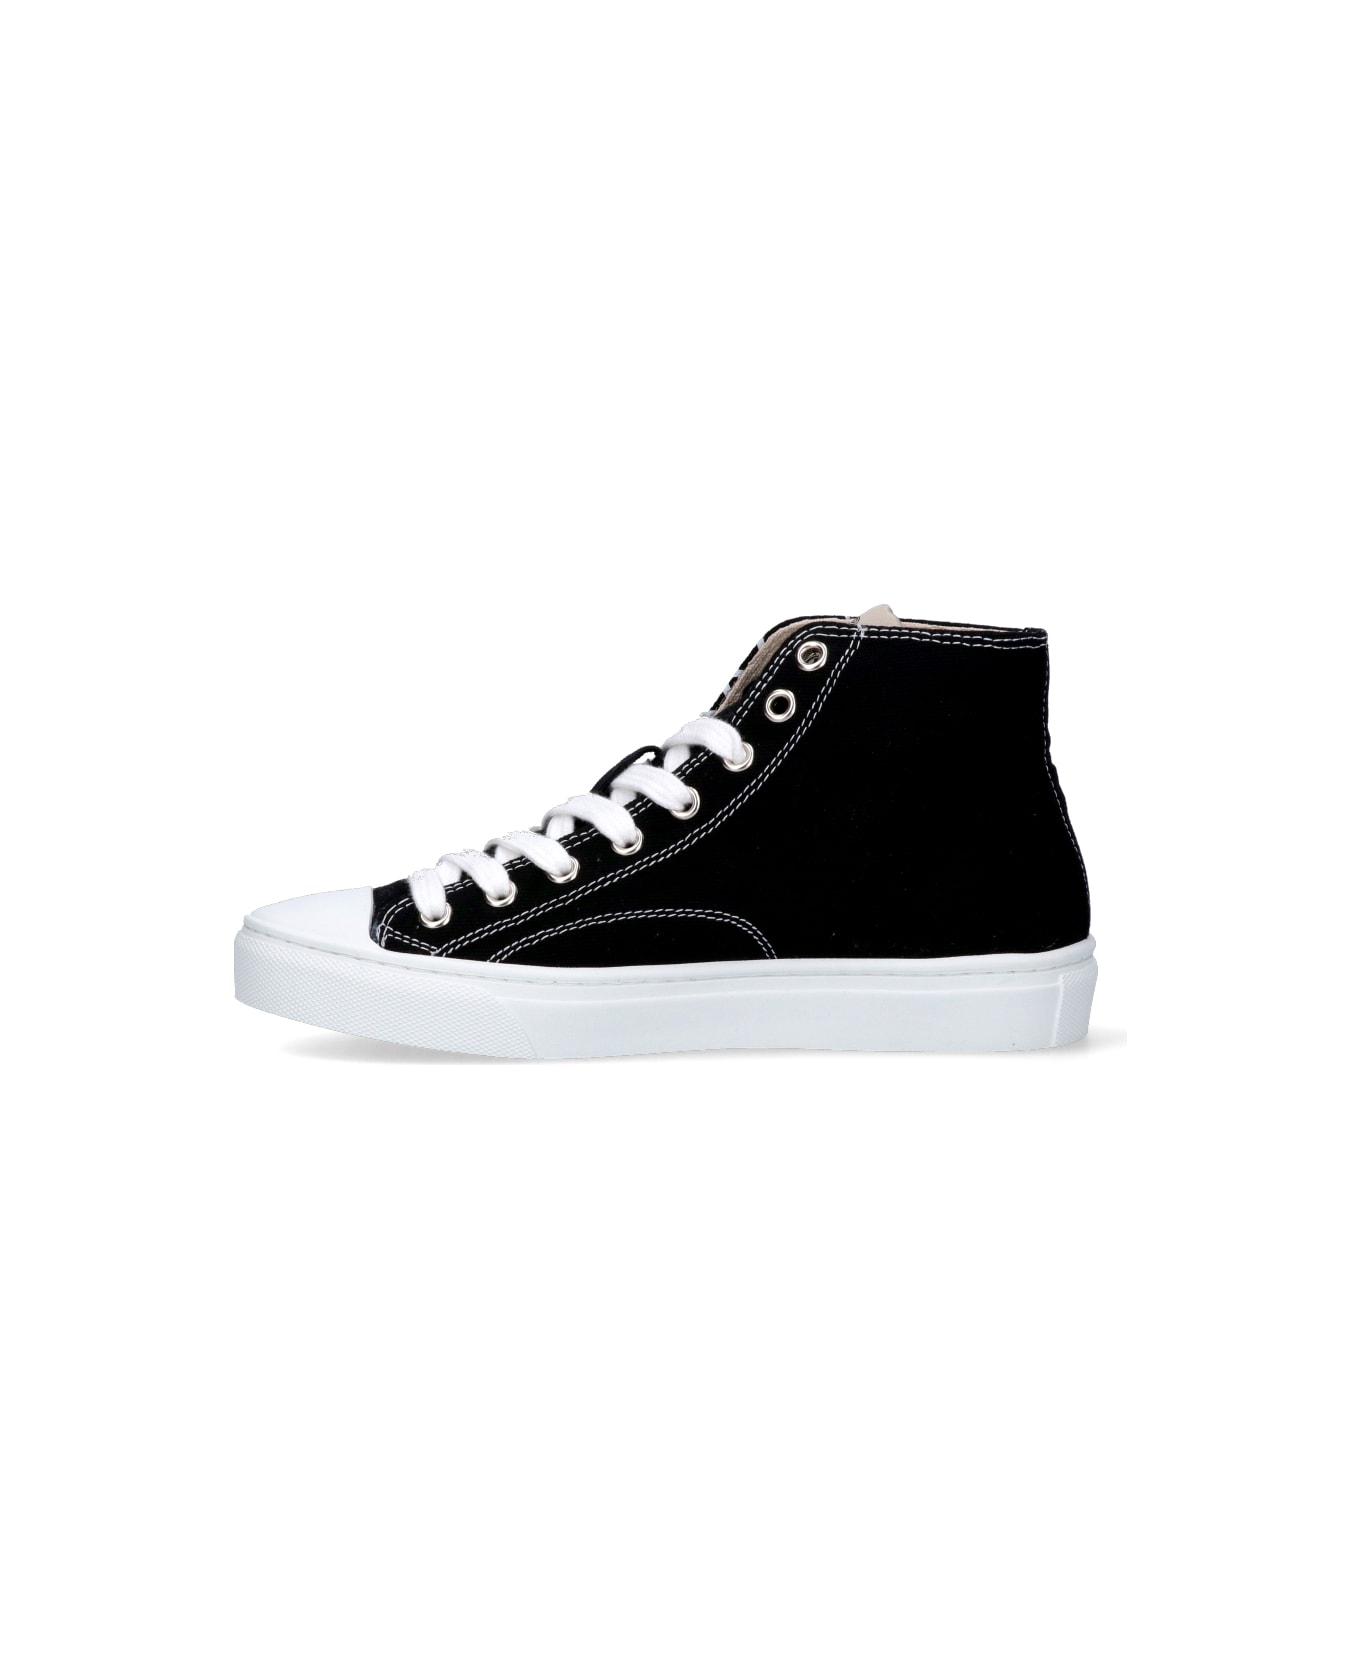 Vivienne Westwood 'plimsoll' High Sneakers - Black  